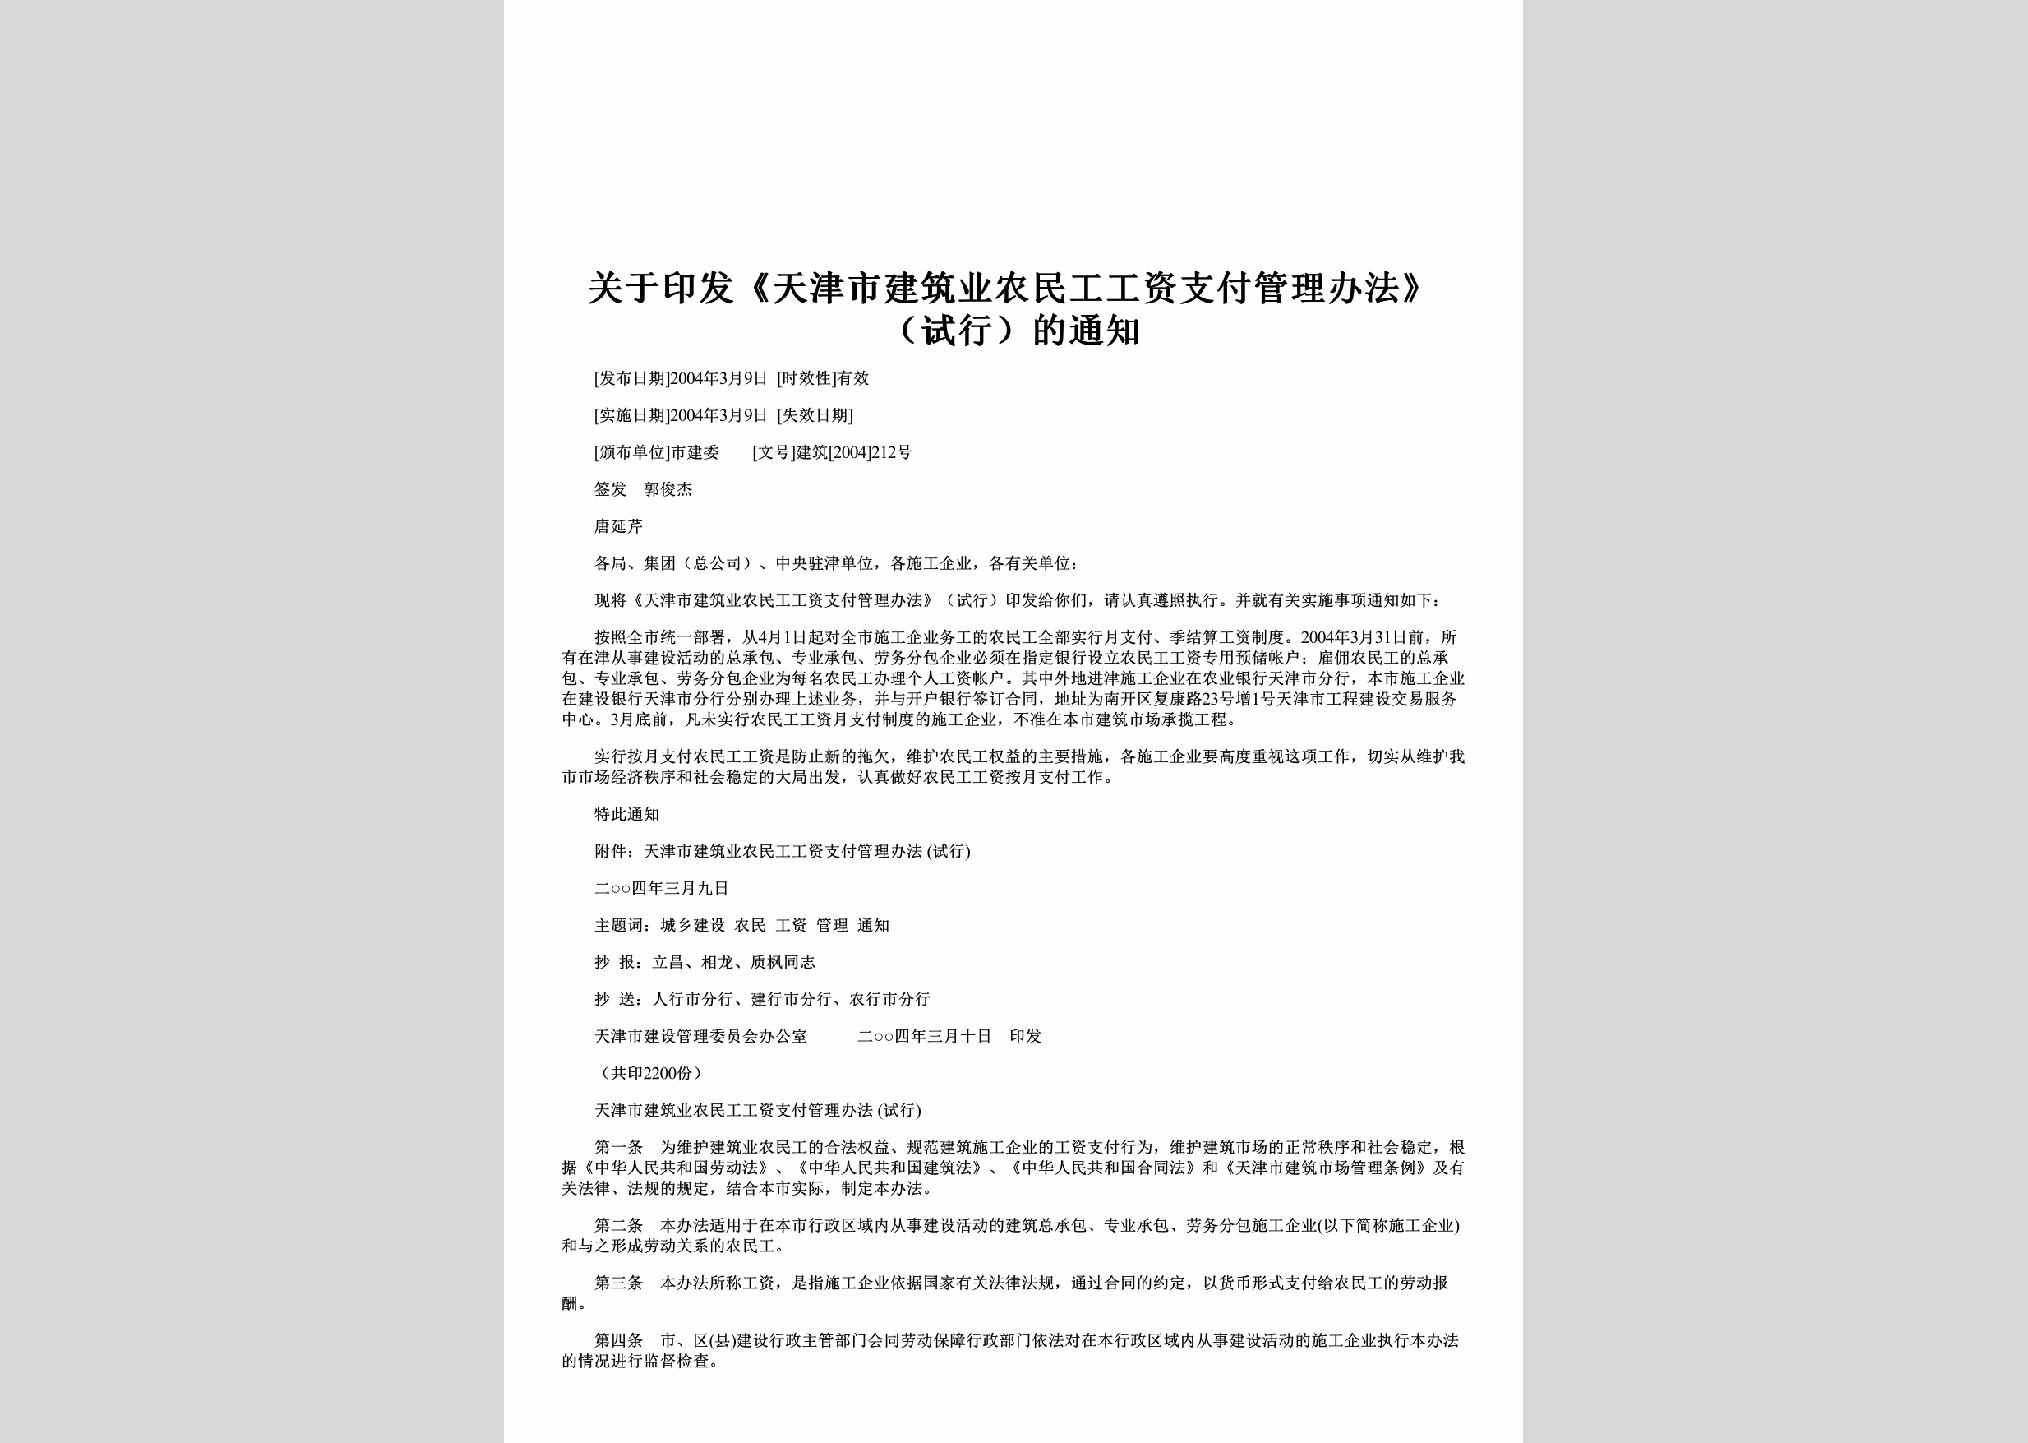 建筑[2004]212号：关于印发《天津市建筑业农民工工资支付管理办法》（试行）的通知